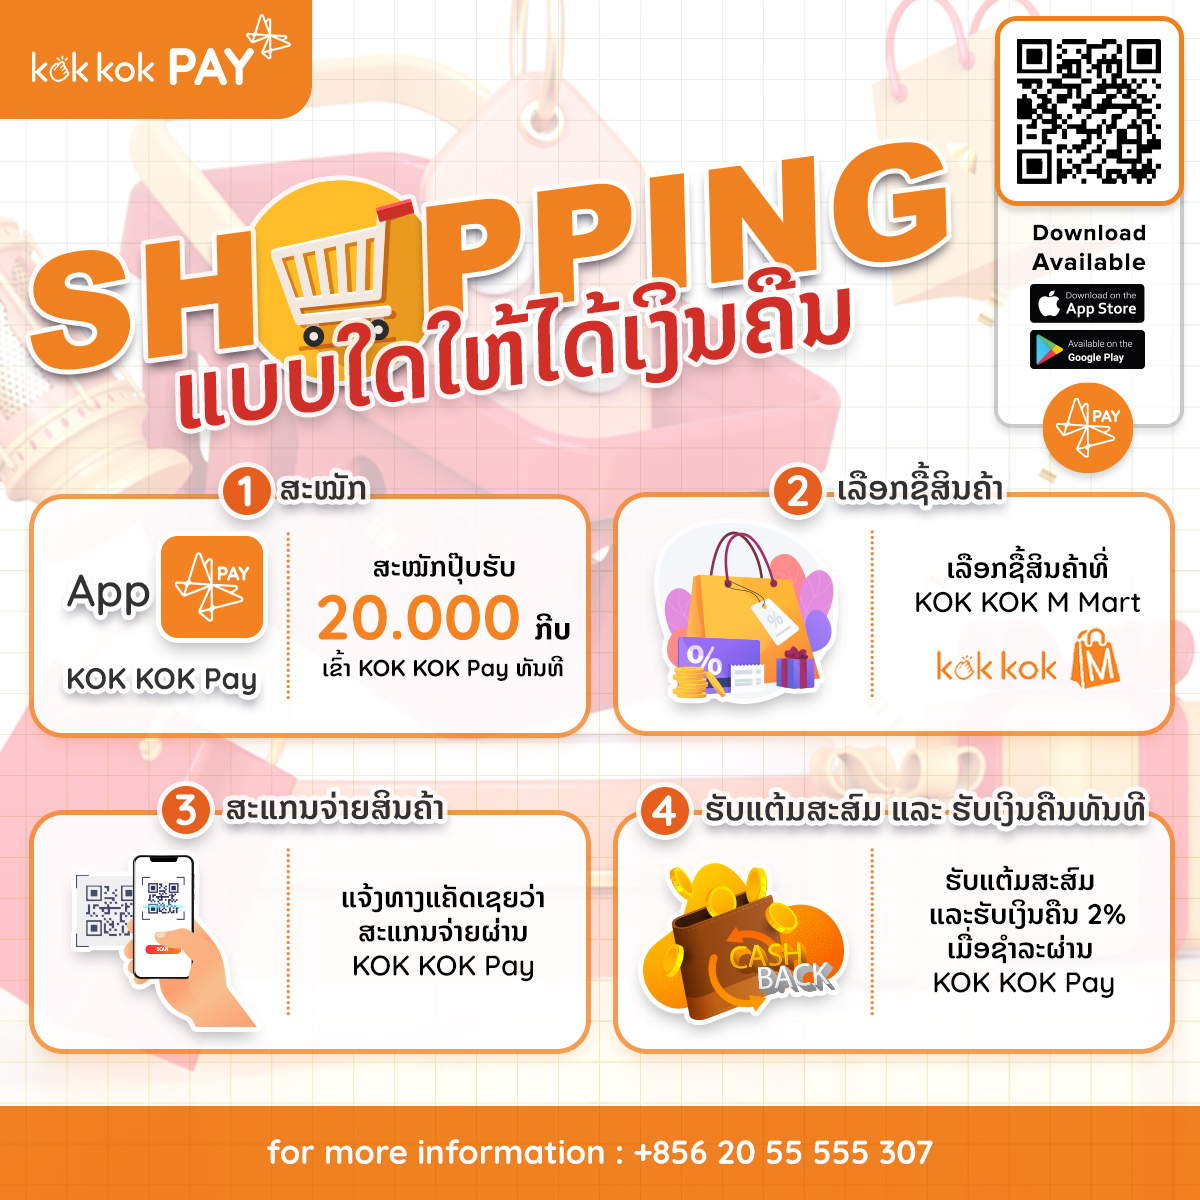 shopping-kokkok-pay-promotion